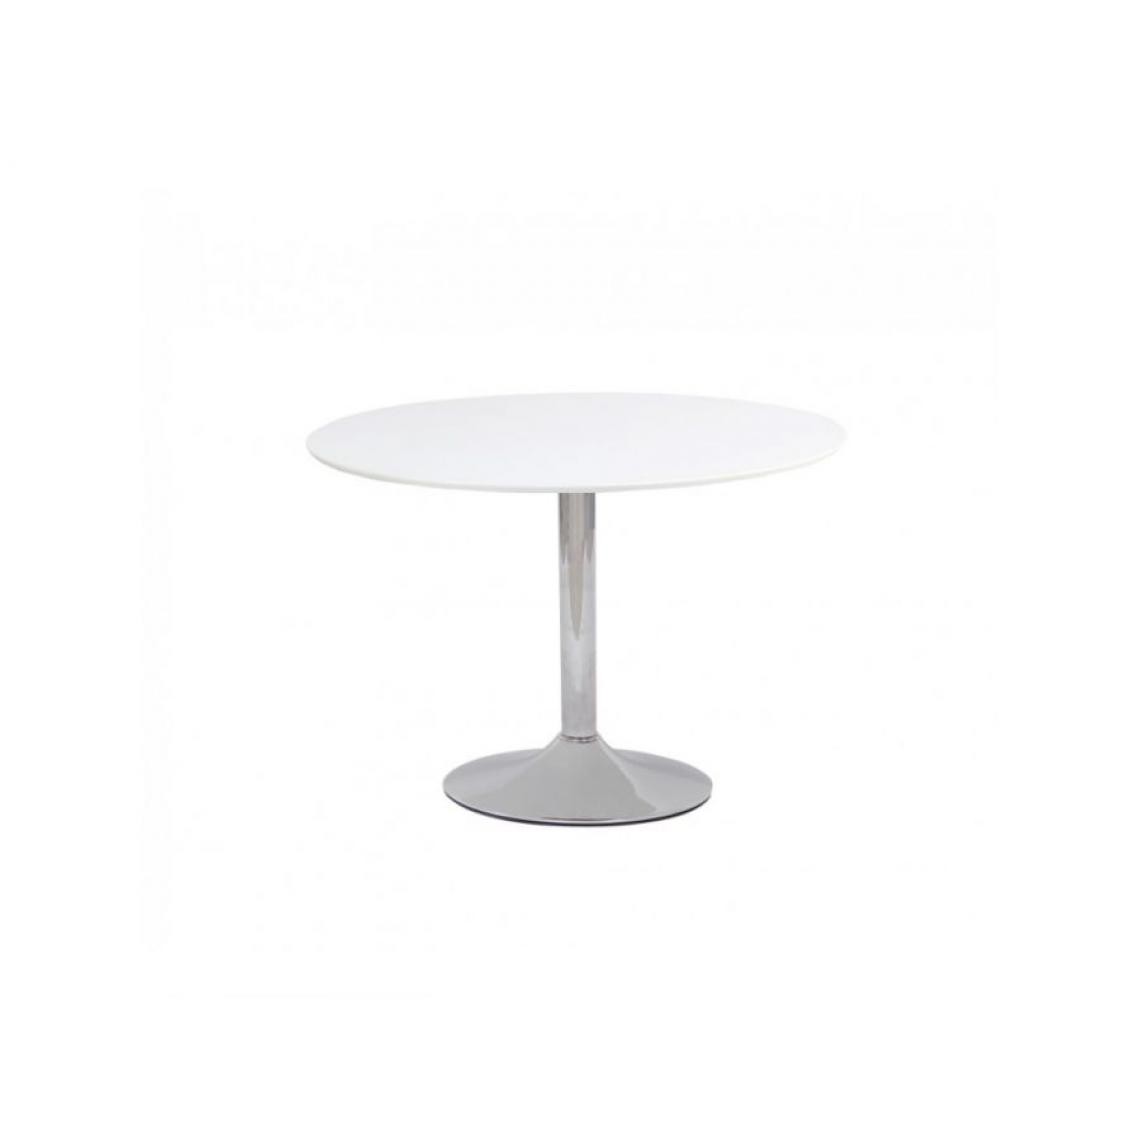 Hucoco - FLAVIO - Table élégante pour intérieur moderne - 90x90x75 cm - Pied central en métal - Plateau en bois MDF - Blanc - Tables à manger